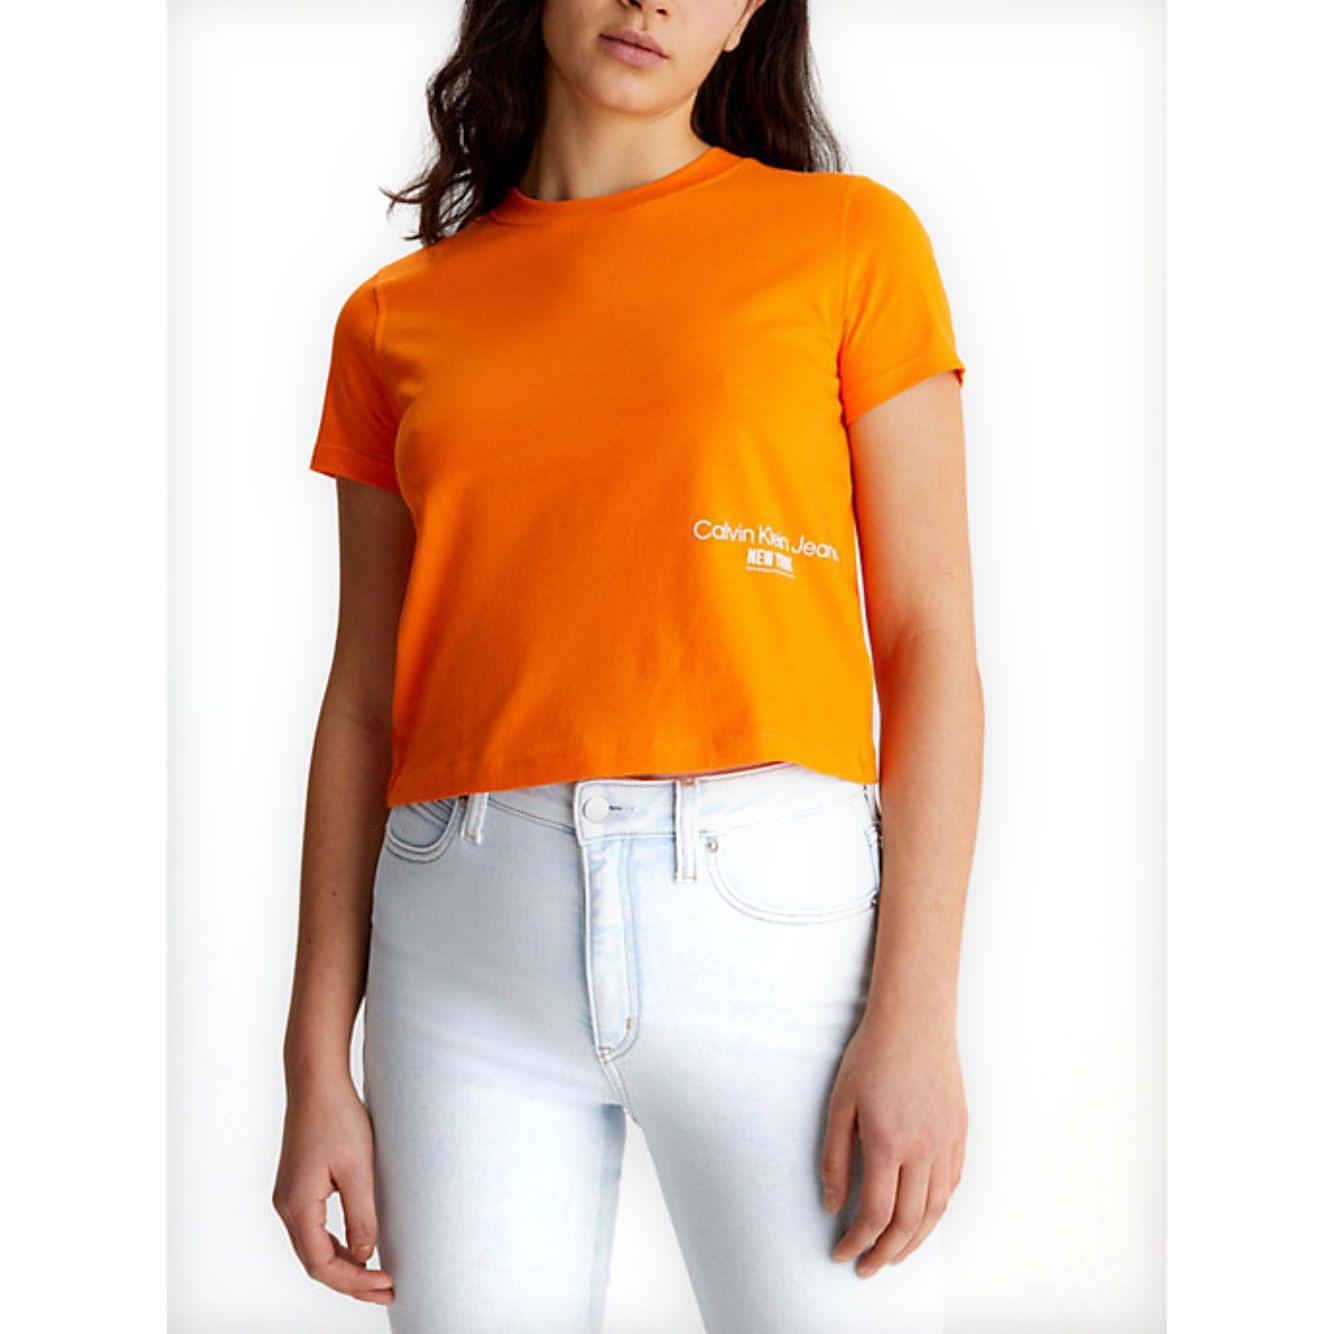 CALVIN KLEIN JEANS moteriški oranžiniai marškinėliai Ny logo baby tee